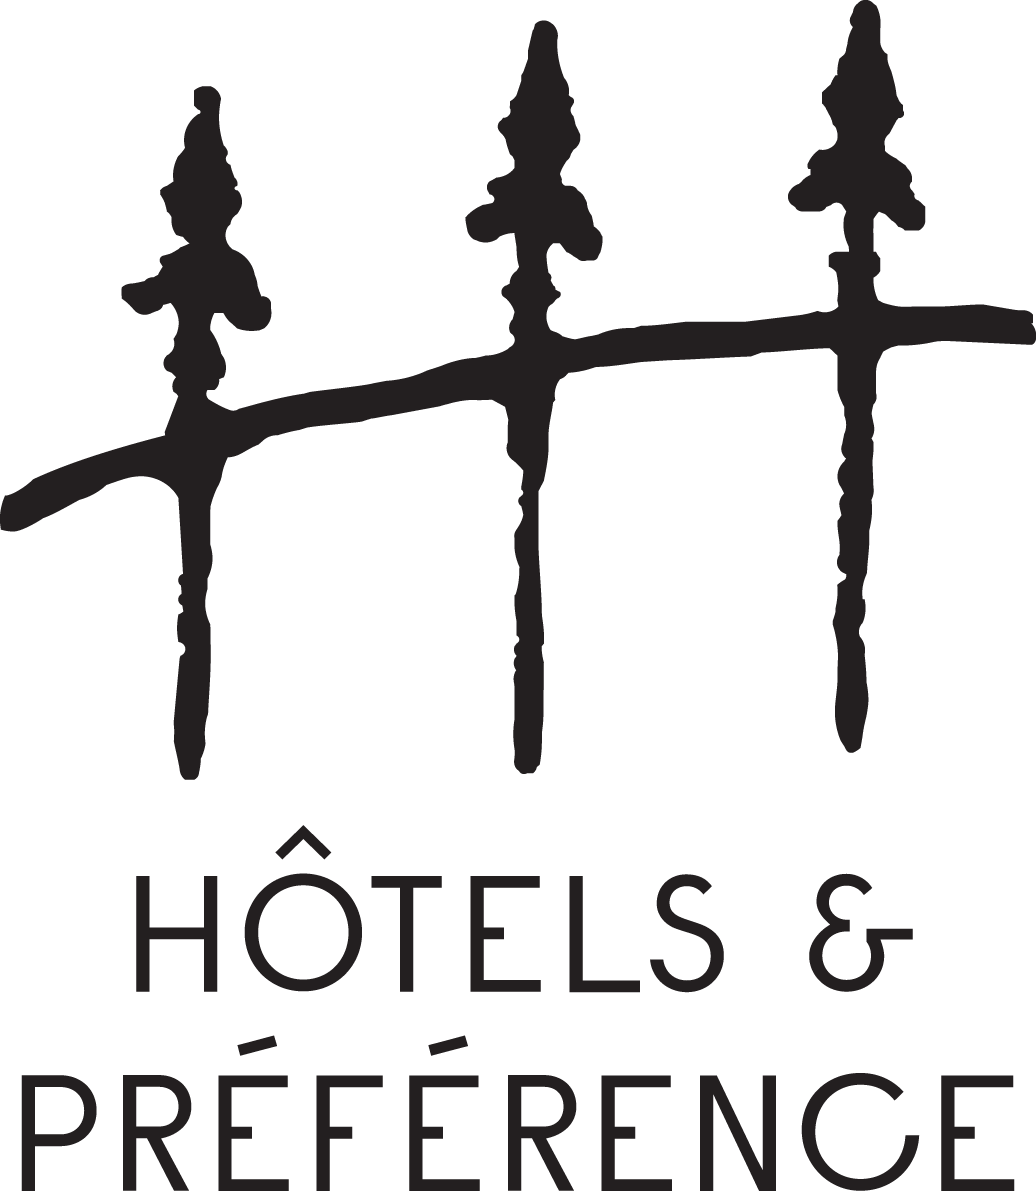 Hotels & préférence